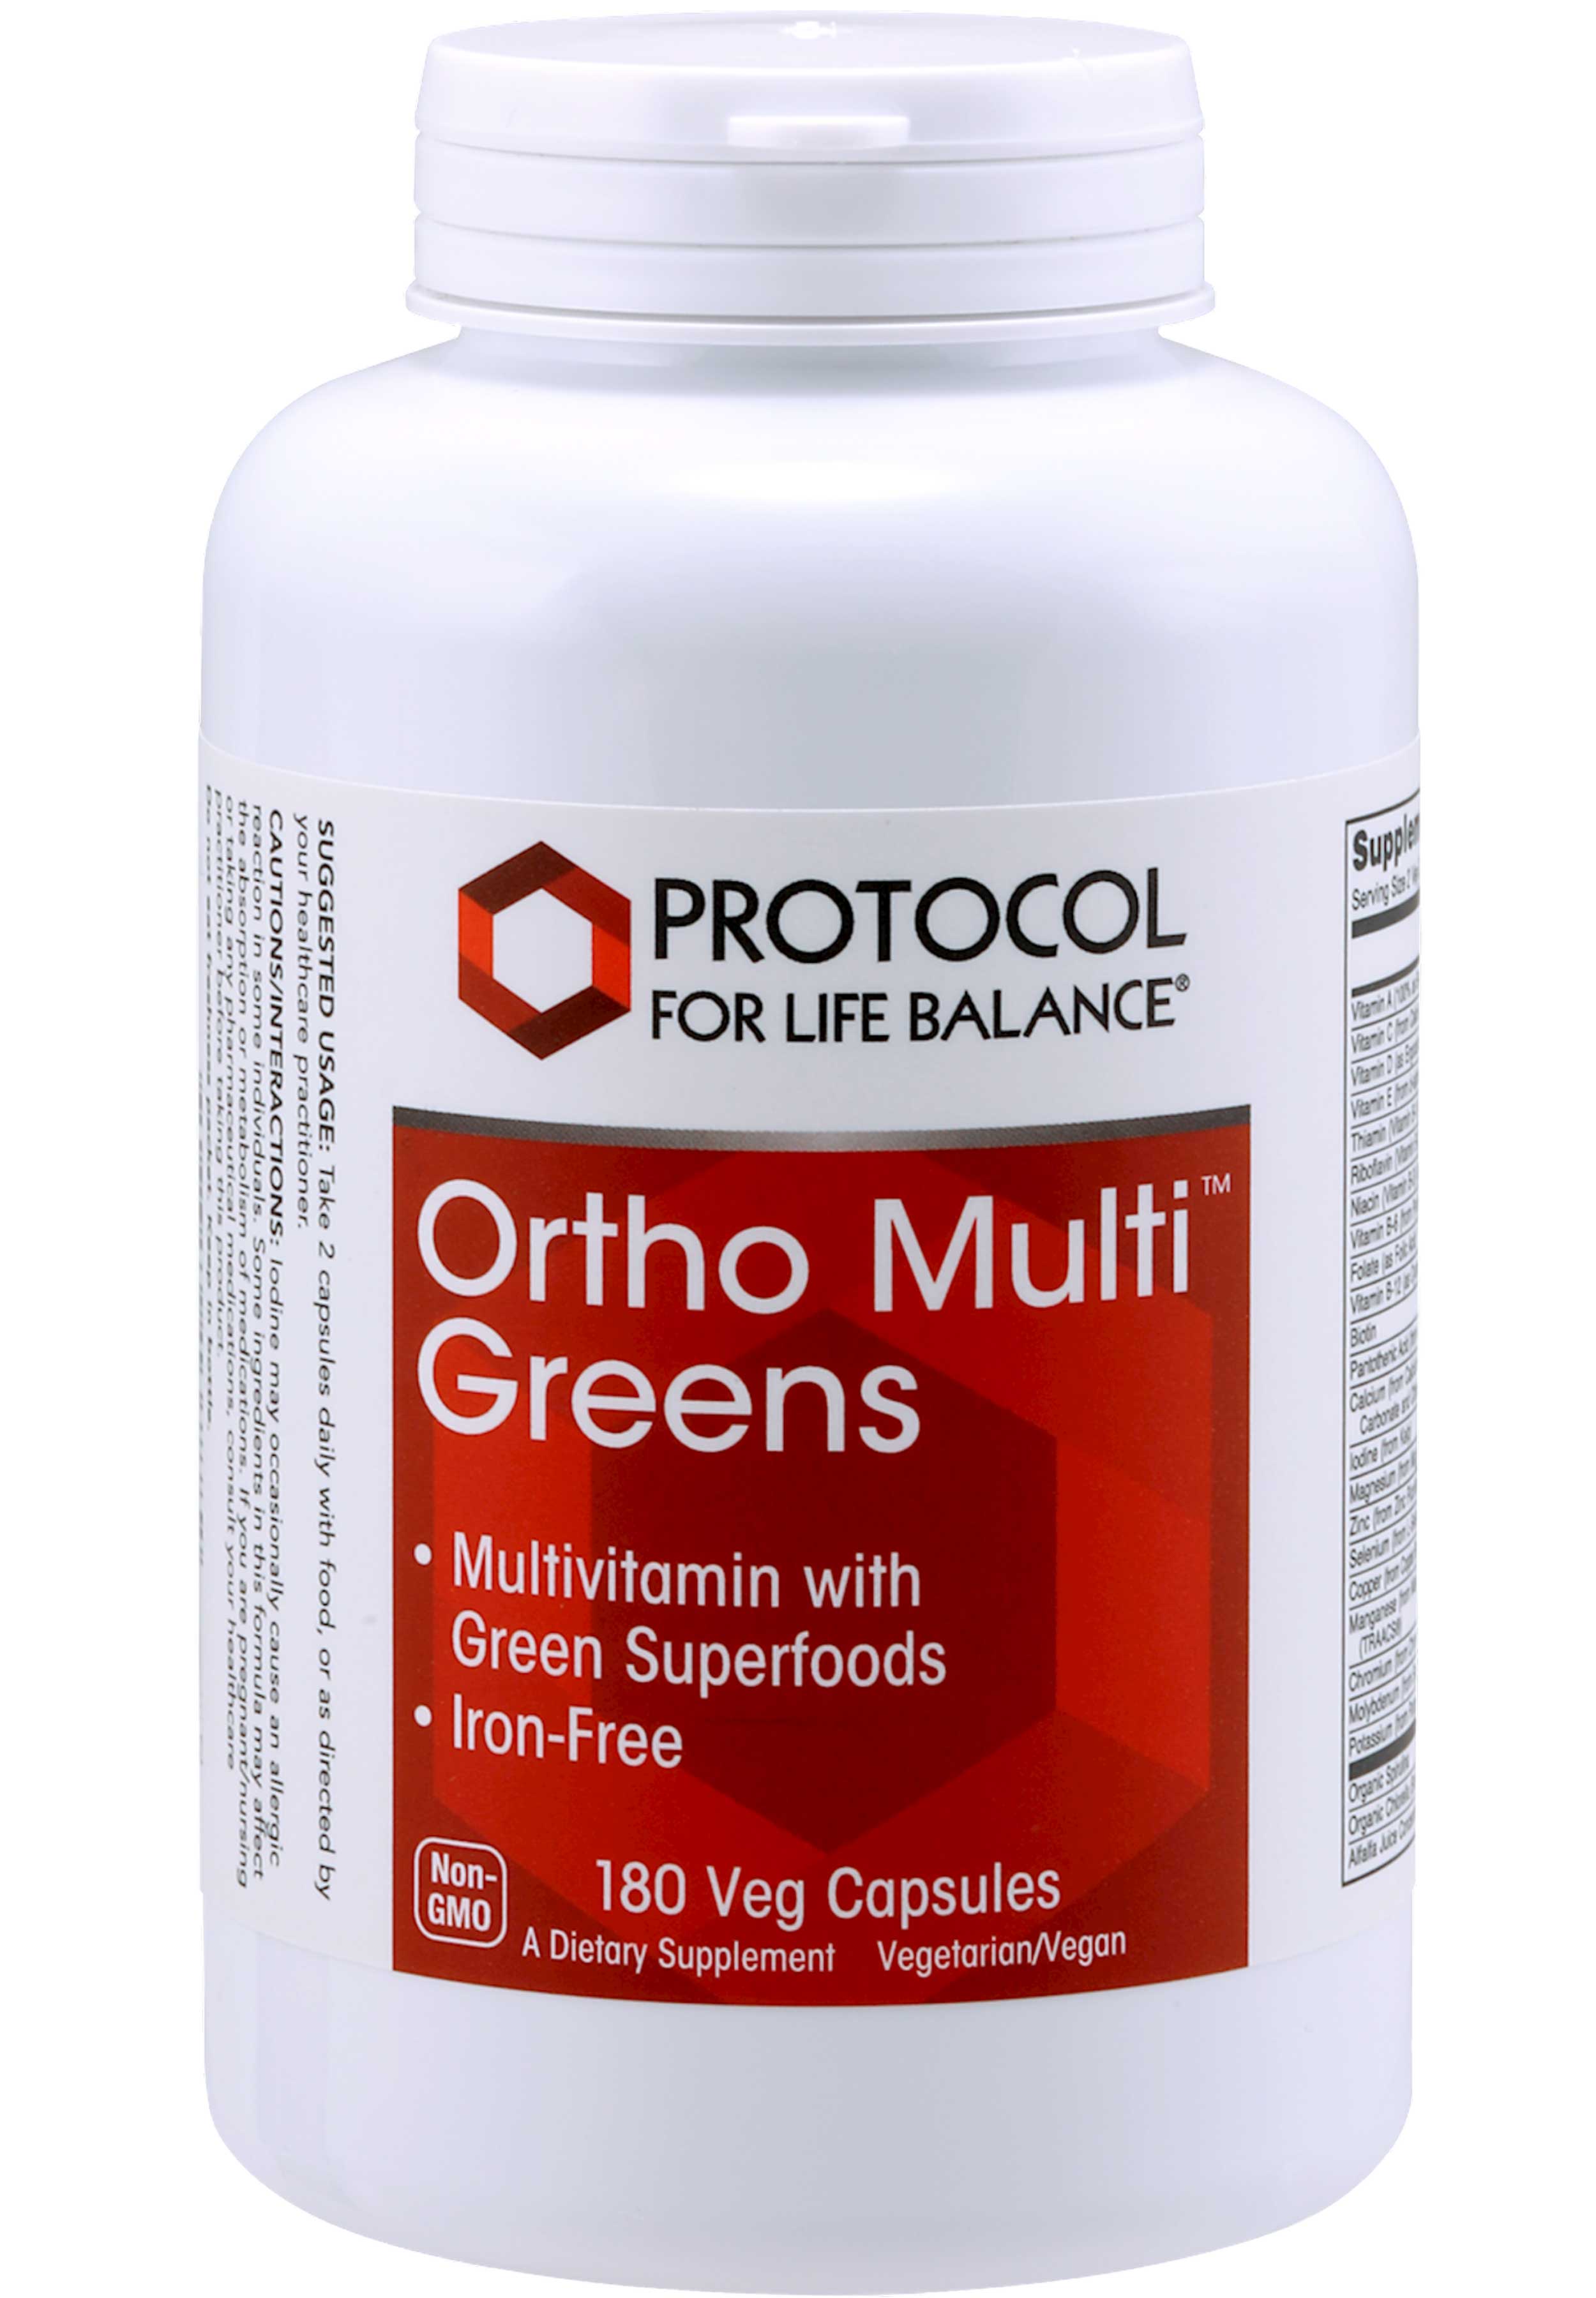 Protocol for Life Balance Ortho Multi Greens